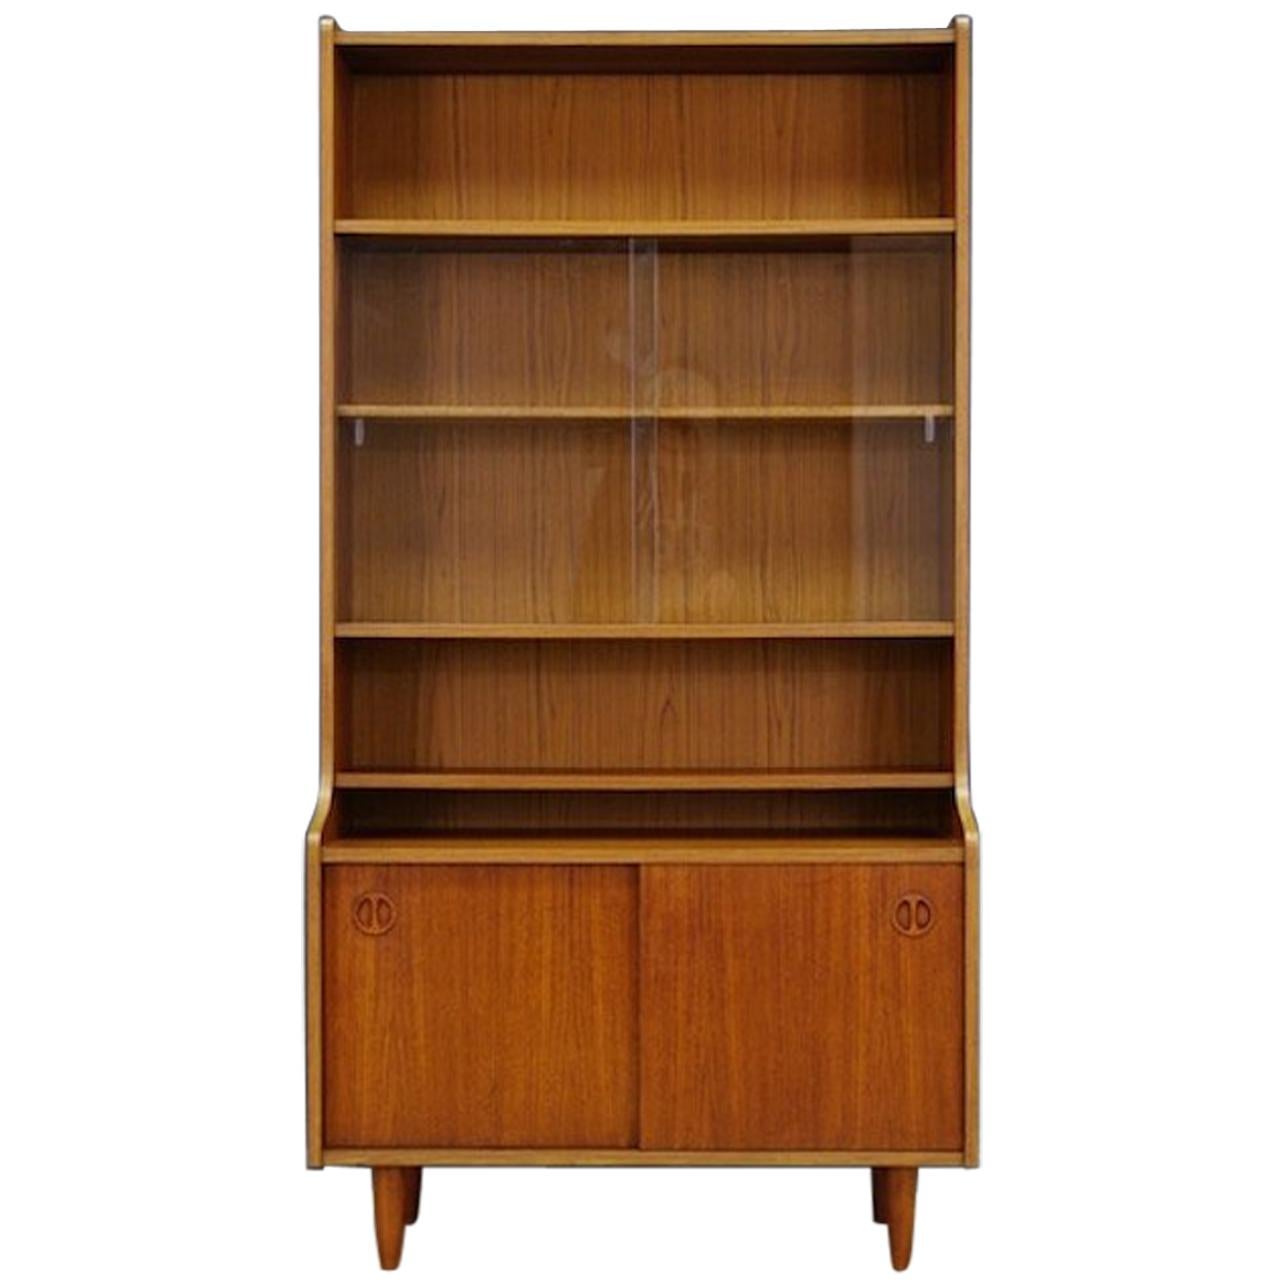 Danish Design Bookcase Teak Midcentury Classic